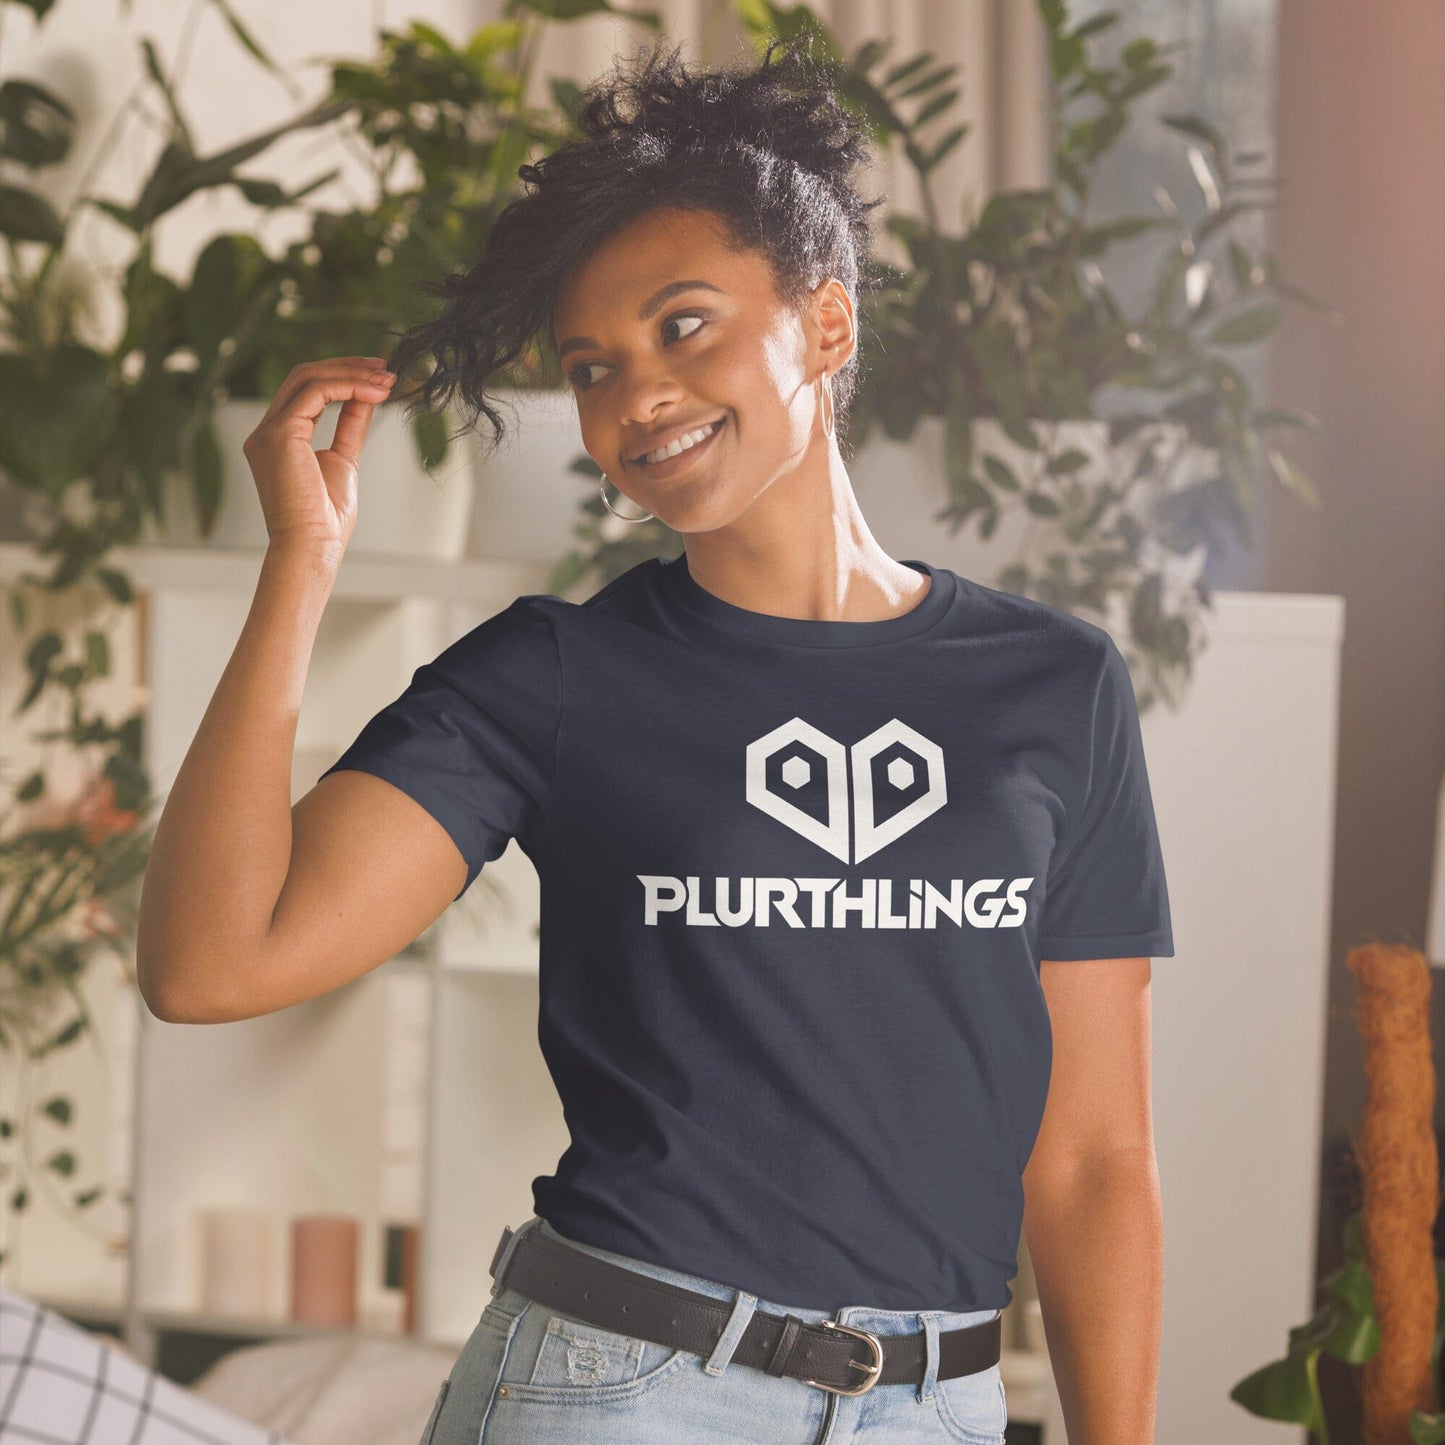 Plurthlings Heart Logo Short-Sleeve Unisex T-Shirt PLURTHLINGS Navy S 